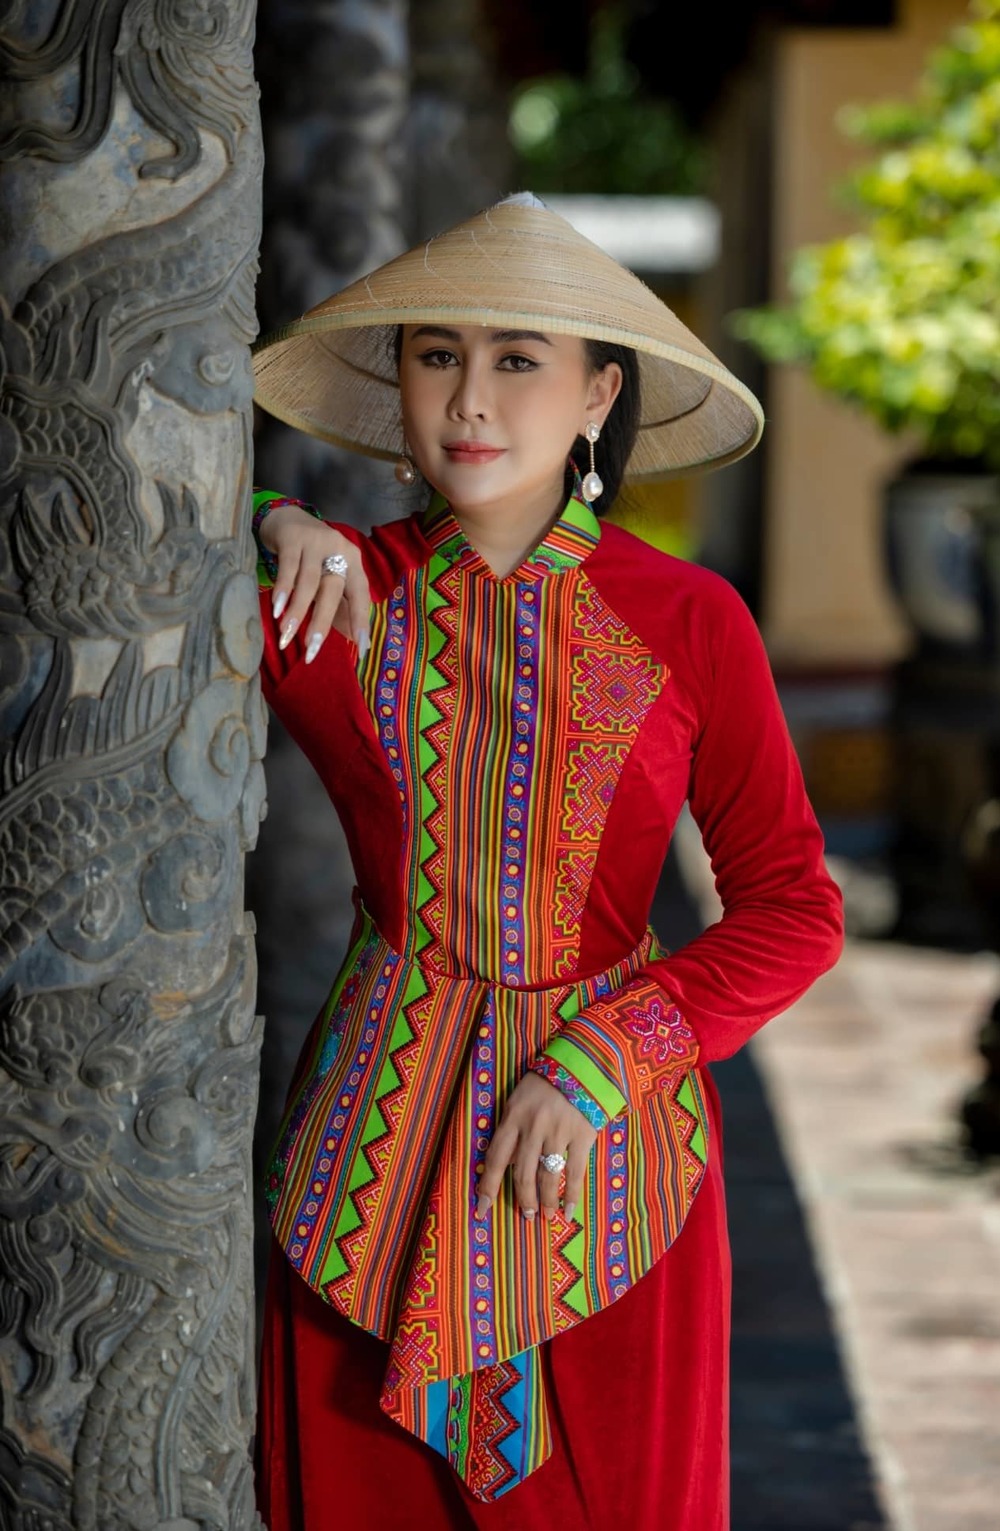 Sự cách điệu ở tà, thân áo dài mang đến một cái nhìn mới mẻ cho trang phục truyền thống.